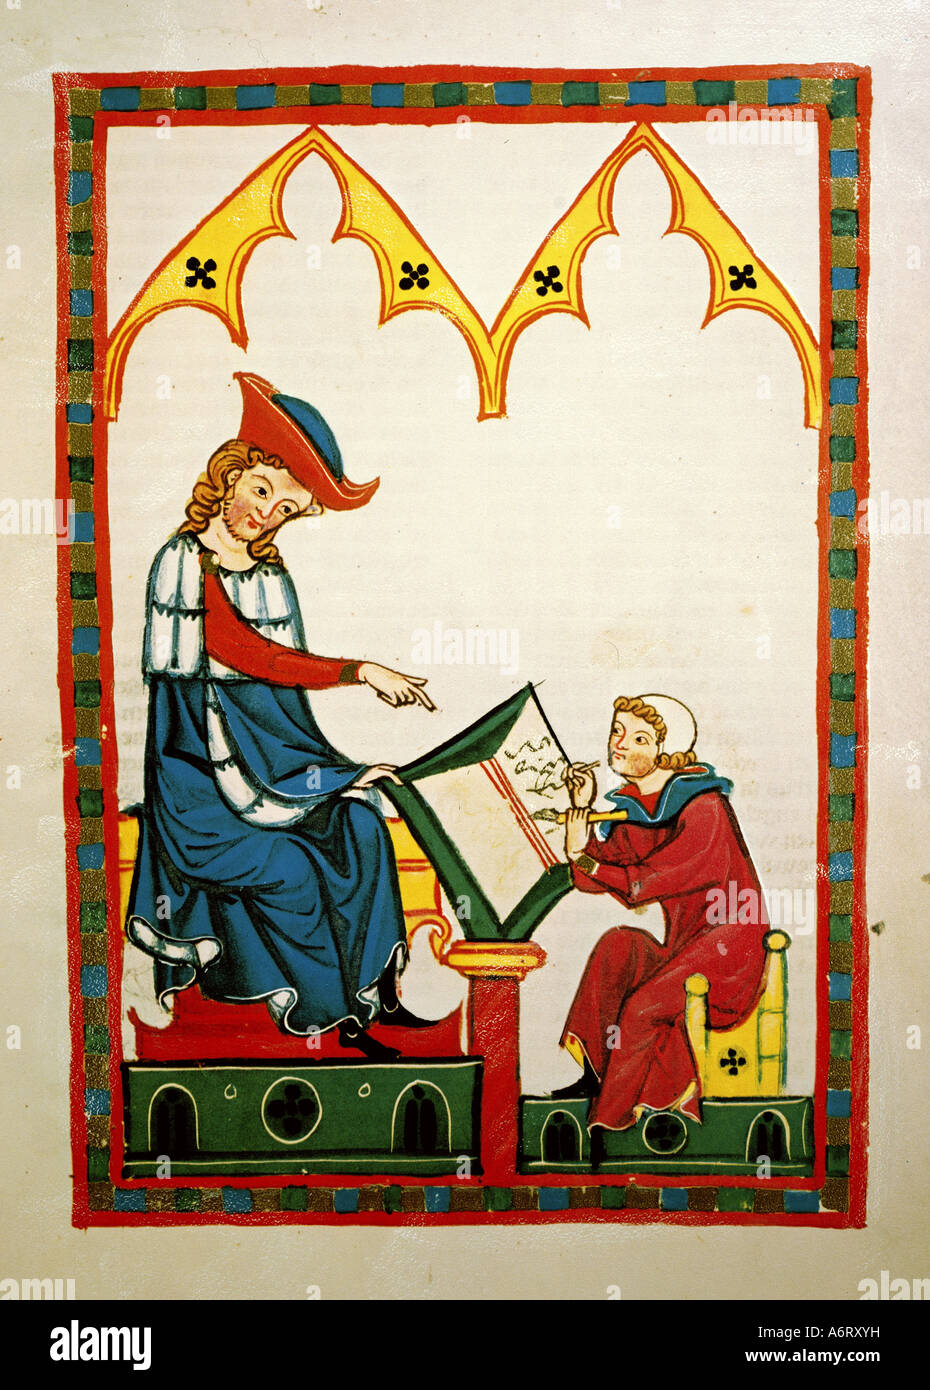 Bildende Kunst, Mittelalter, Gothic, Beleuchtung, Codex Manesse, Zürich, 1305-1340, Meister Konrad von Würzburg (ca. 1220/1230 - Stockfoto